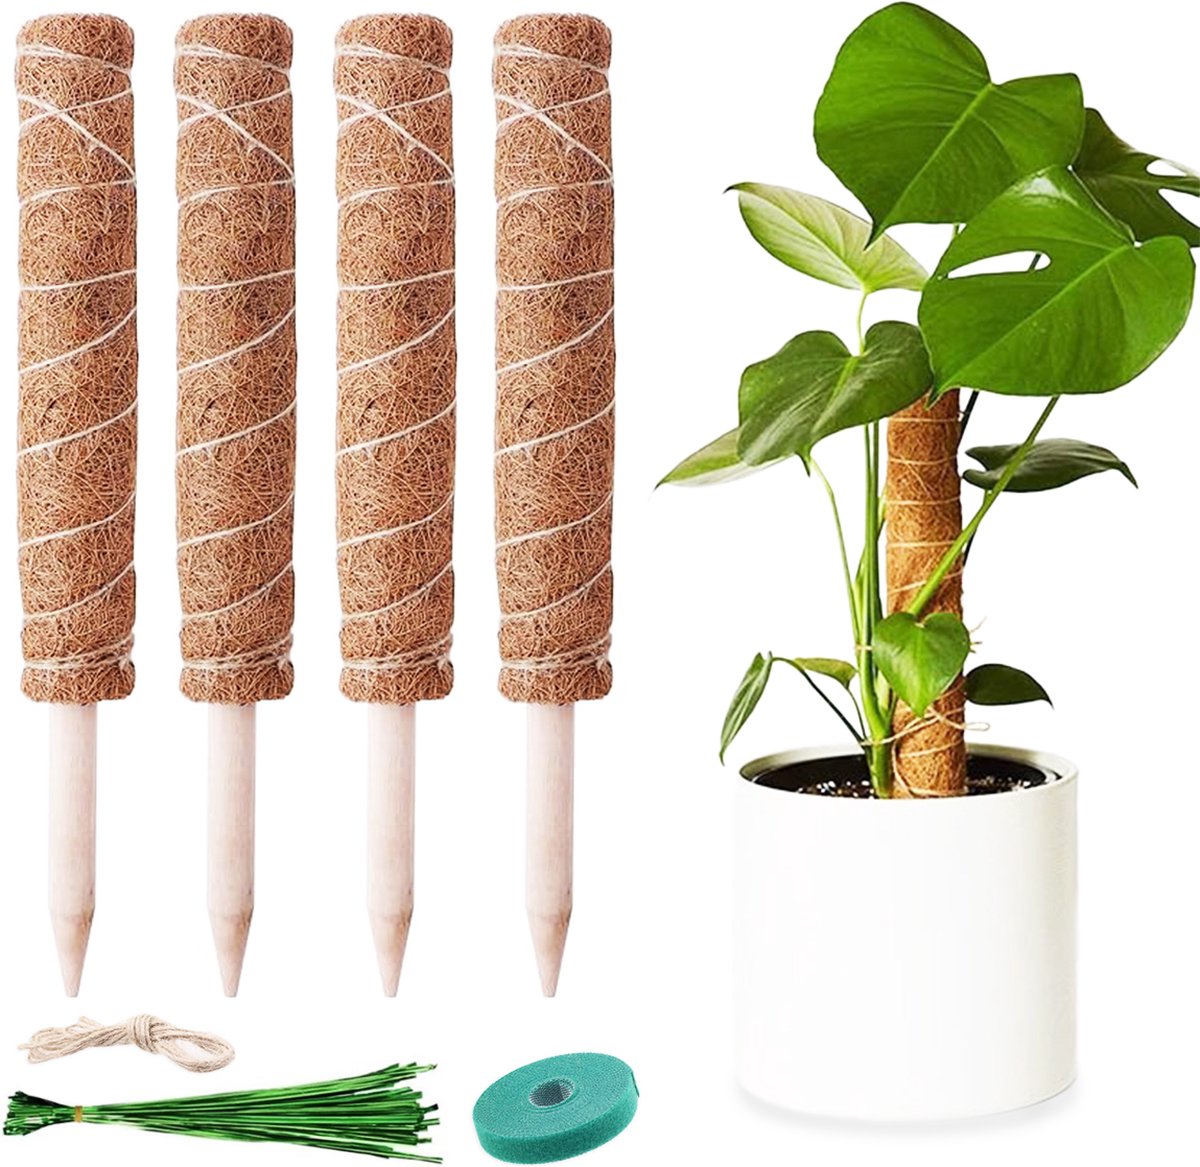 YUGN 130cm Verlengbaar Mosstok 40cm 4 stuks - Mosstok voor Planten – Groene Banden 80 stuks - Eucalyptus & Kokosnoot Materiaal – 100% Biologisch Afbreekbaar - Cadeautip